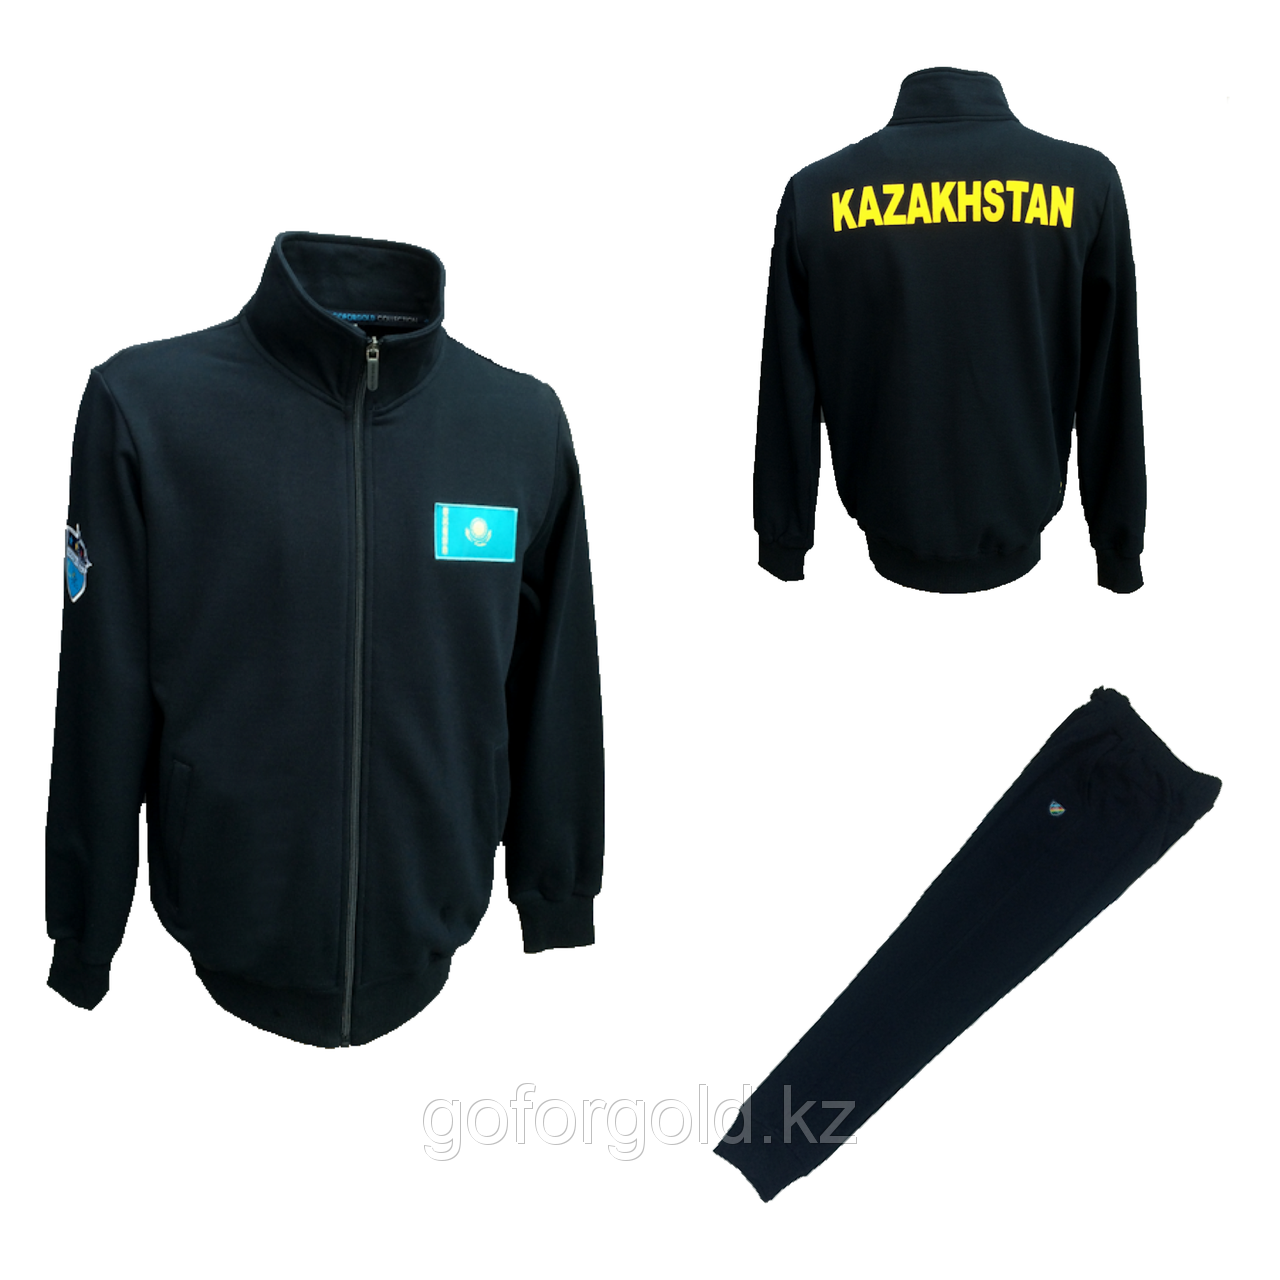 Спортивный костюм казахстан